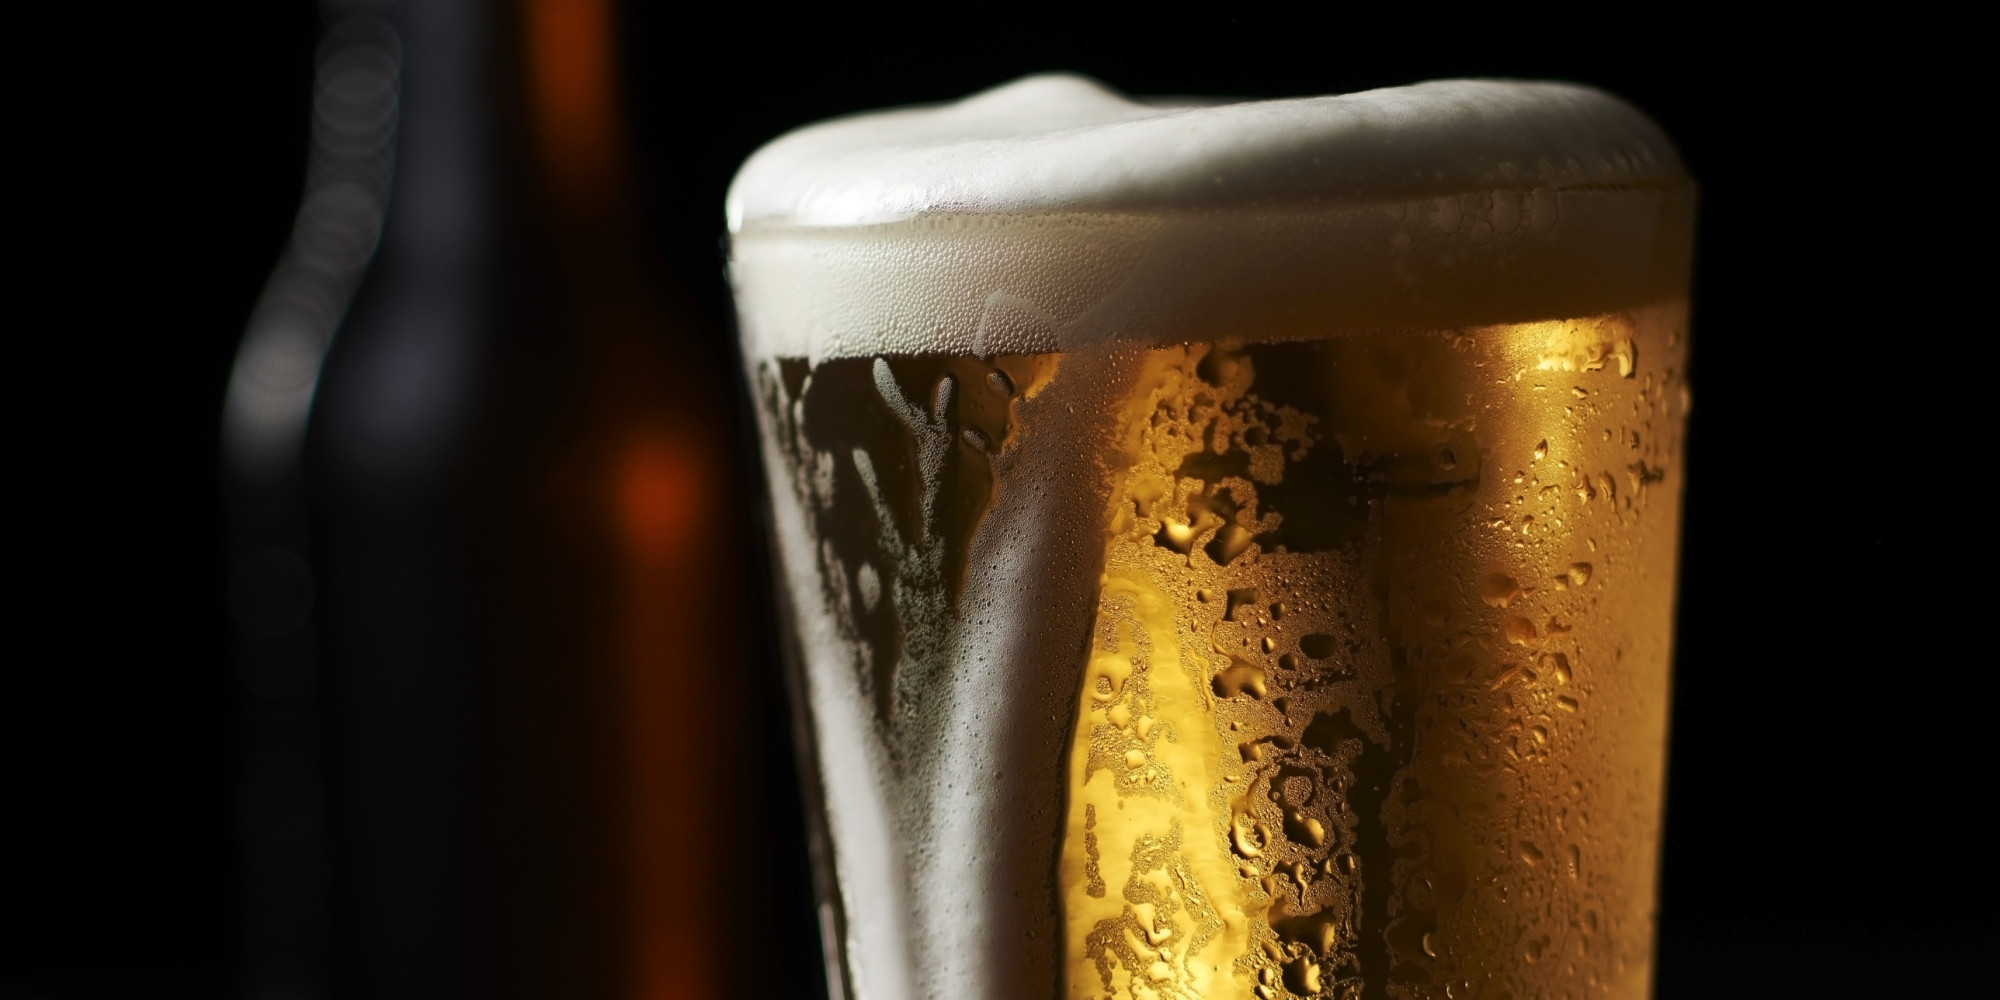 Mύθοι και αλήθειες για τη μπύρα